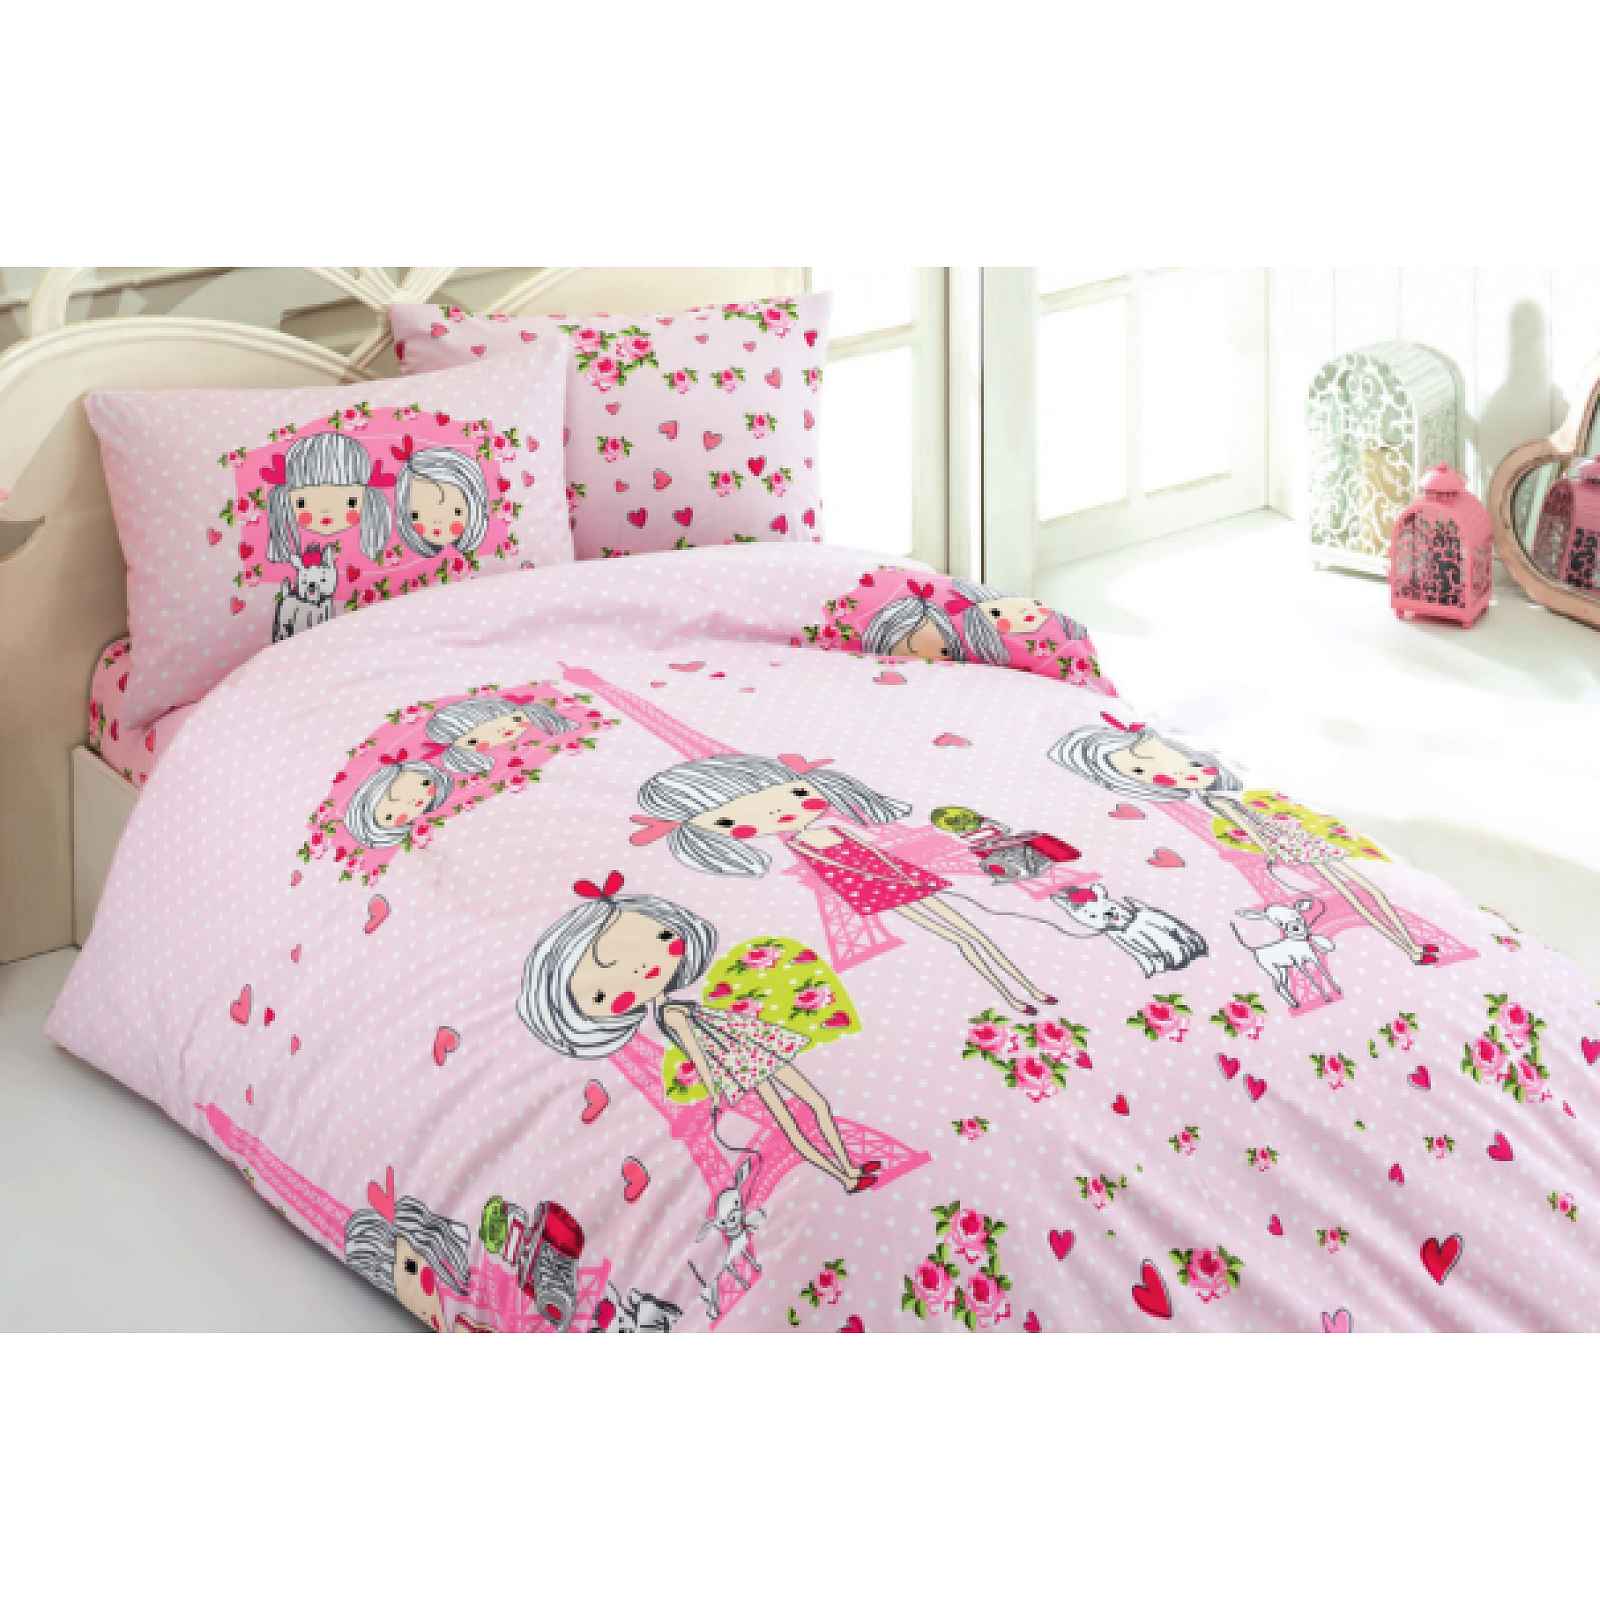 Klinmam Home povlečení She V1 z Renforcé bavlny, dívčí, růžové, kreslené postavy v Paříži, 140x200 cm + 50x70 cm